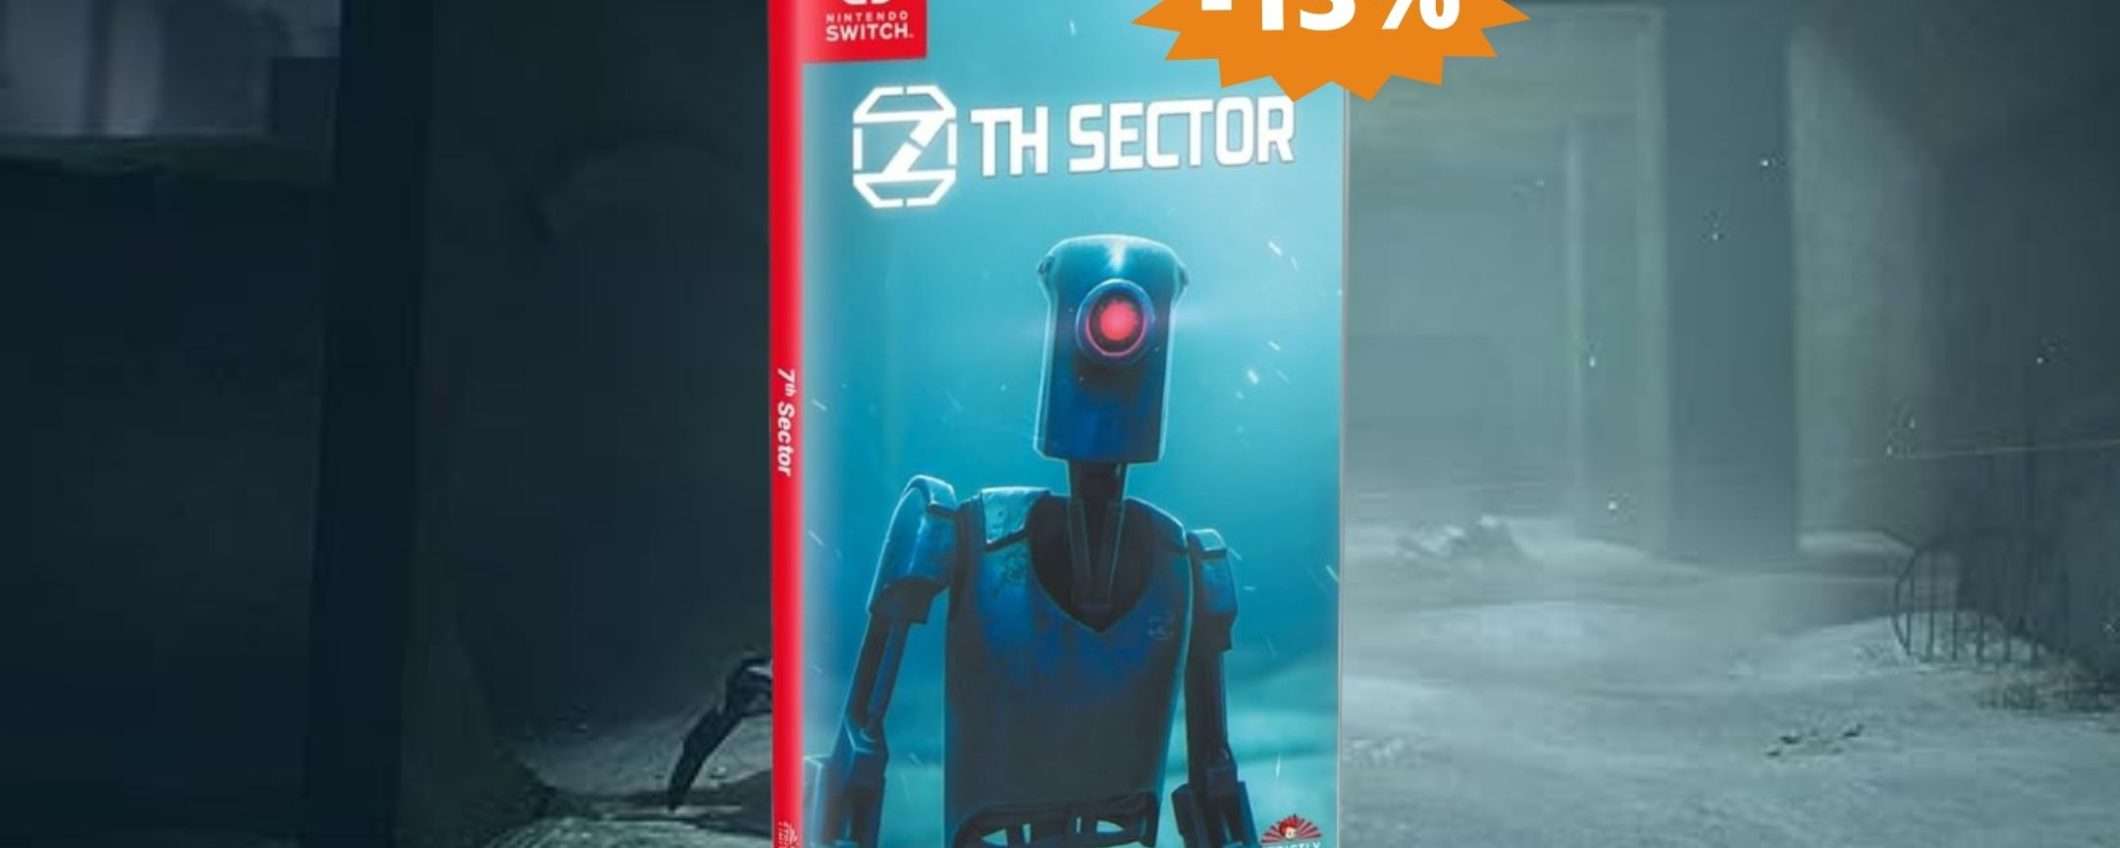 7th Sector per Switch: una trama da vivere e rivivere (-13%)